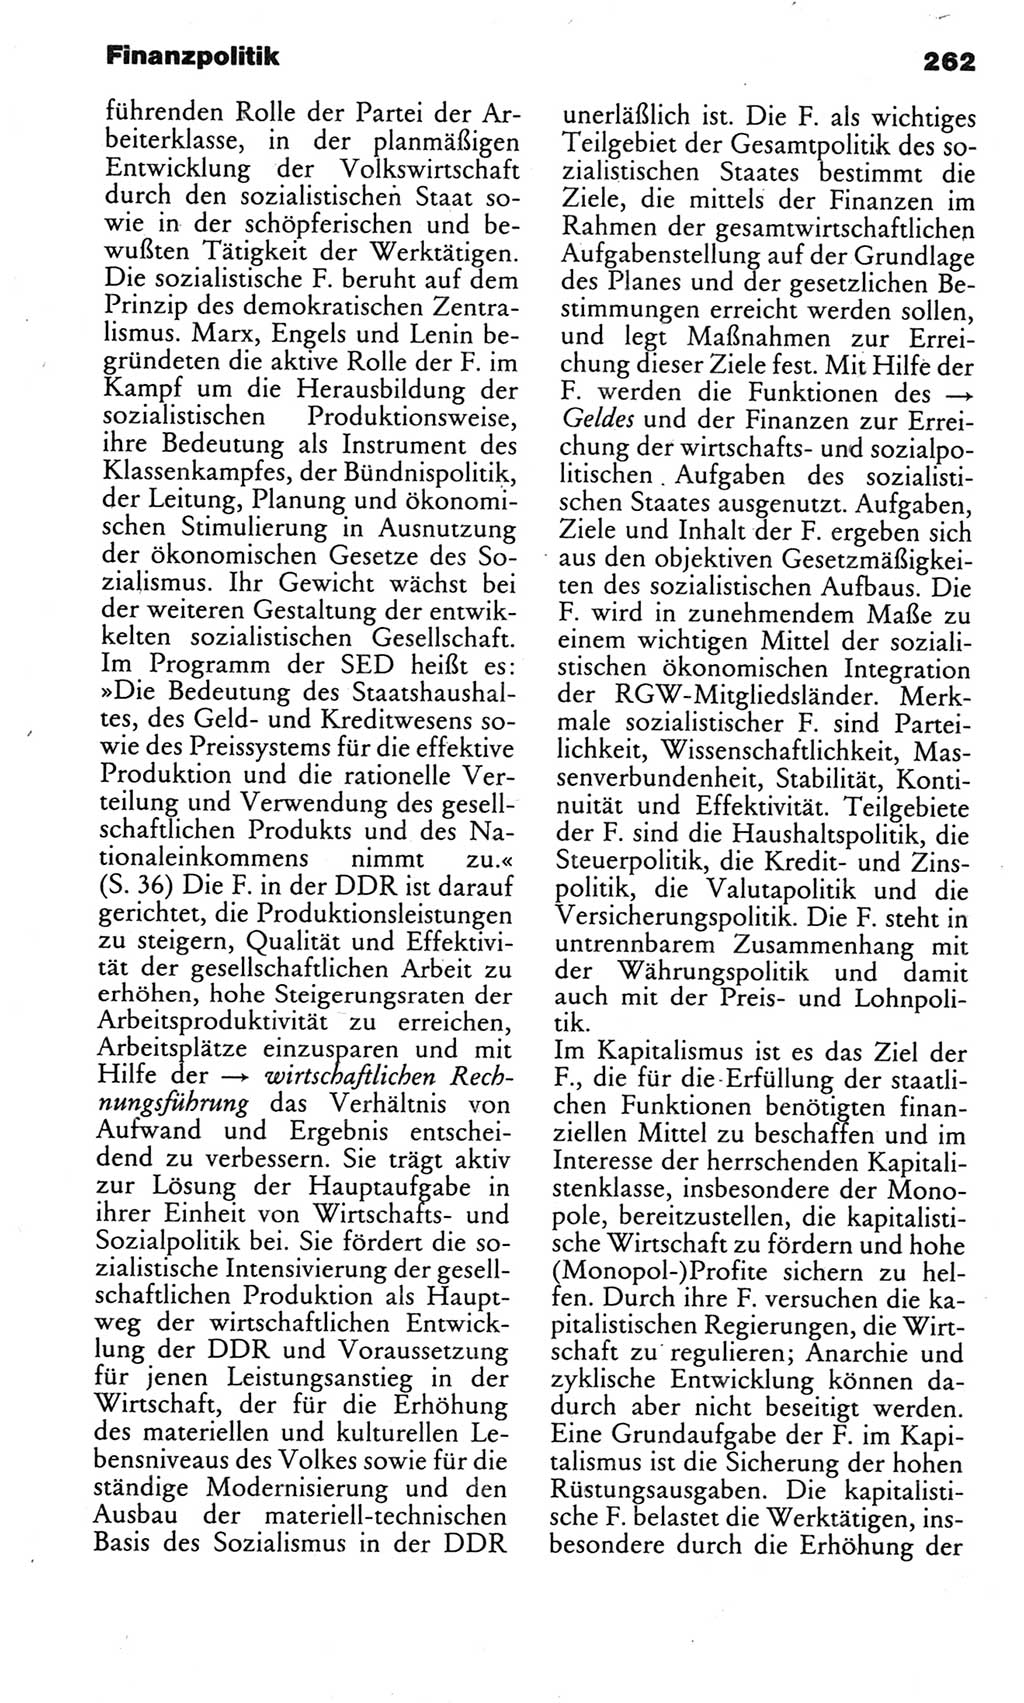 Kleines politisches Wörterbuch [Deutsche Demokratische Republik (DDR)] 1983, Seite 262 (Kl. pol. Wb. DDR 1983, S. 262)